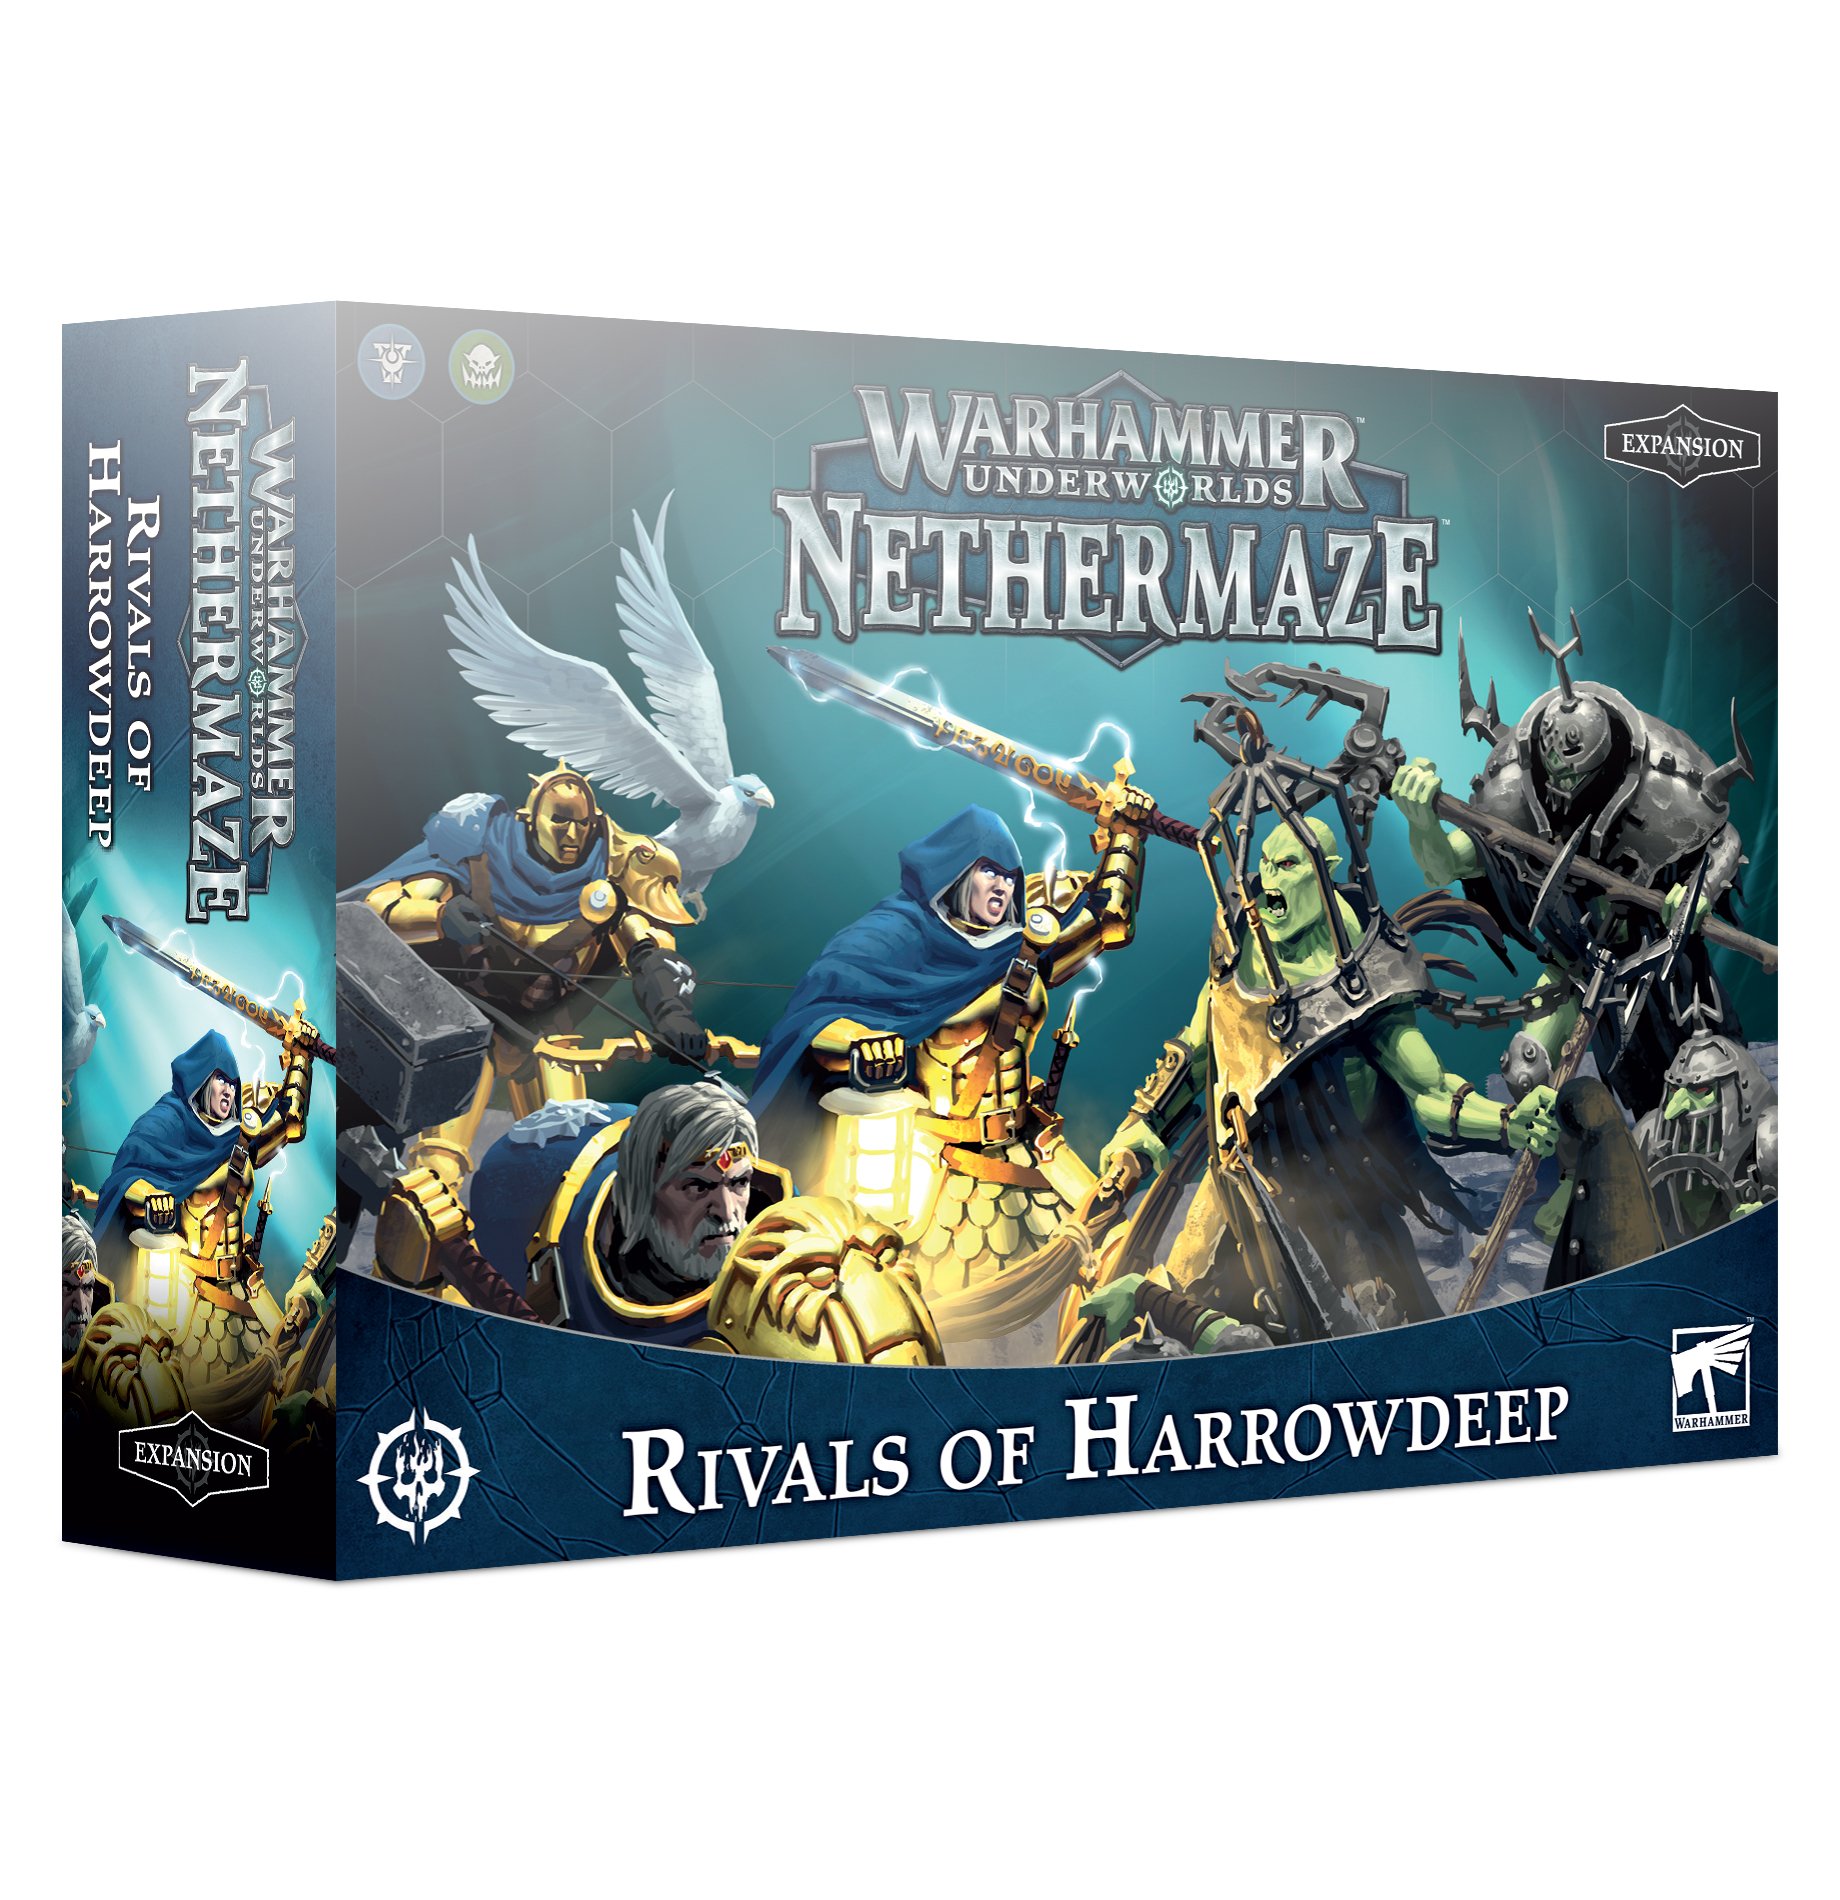 Warhammer Underworlds: Nethermaze: Rivals of Harrowdeep 